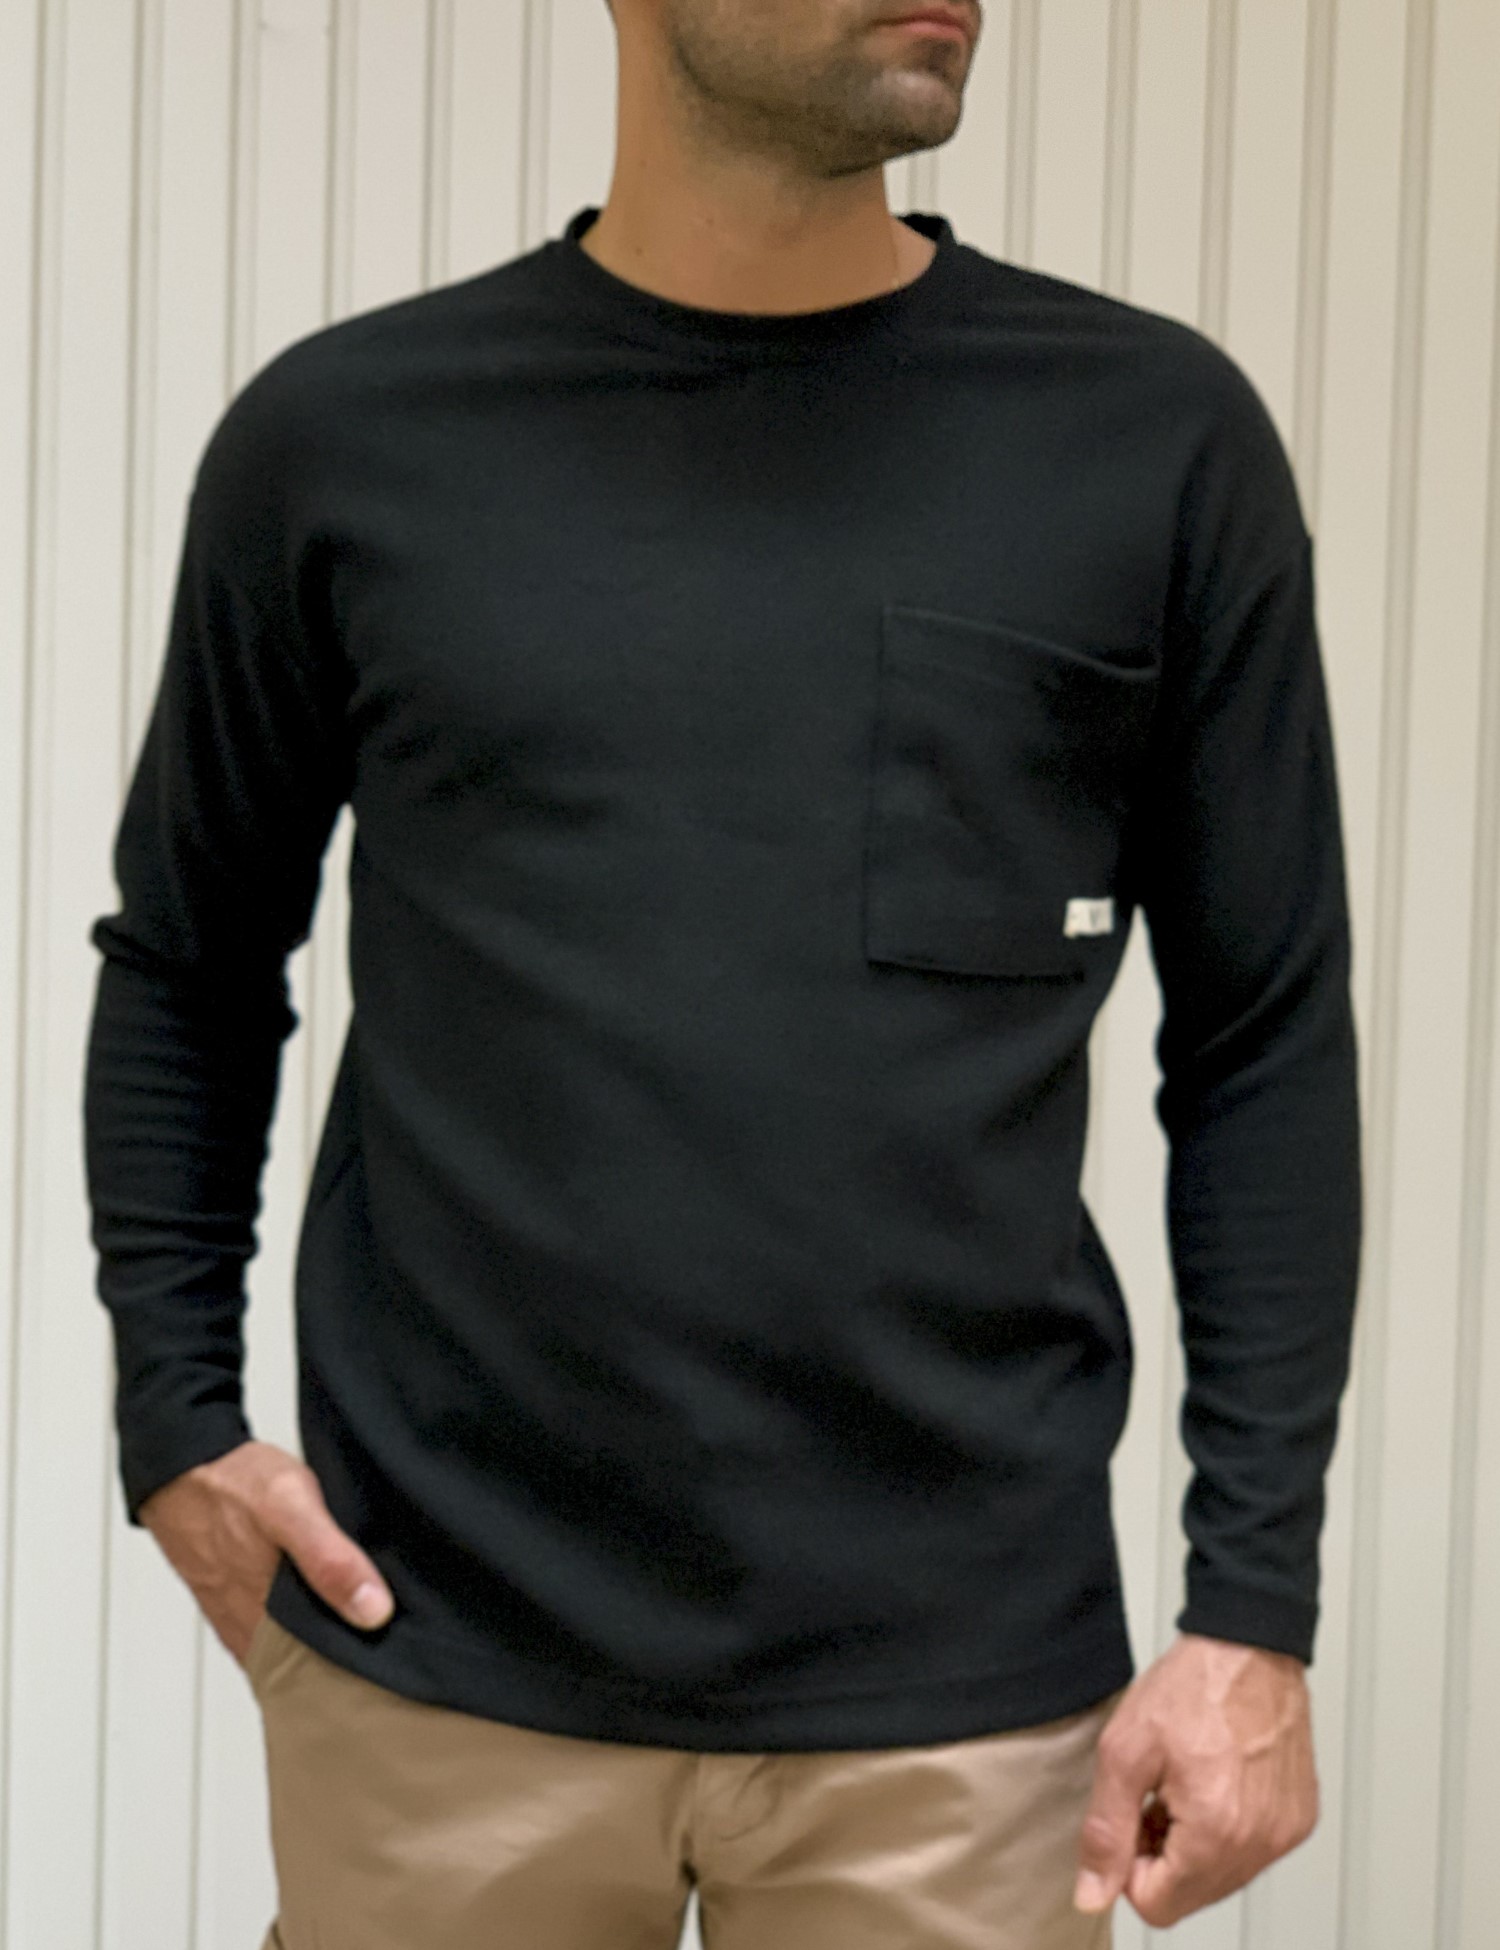 – Ανδρικη μαυρη μακρυμανικη μπλουζα με αναγλυφο υφασμα 1136